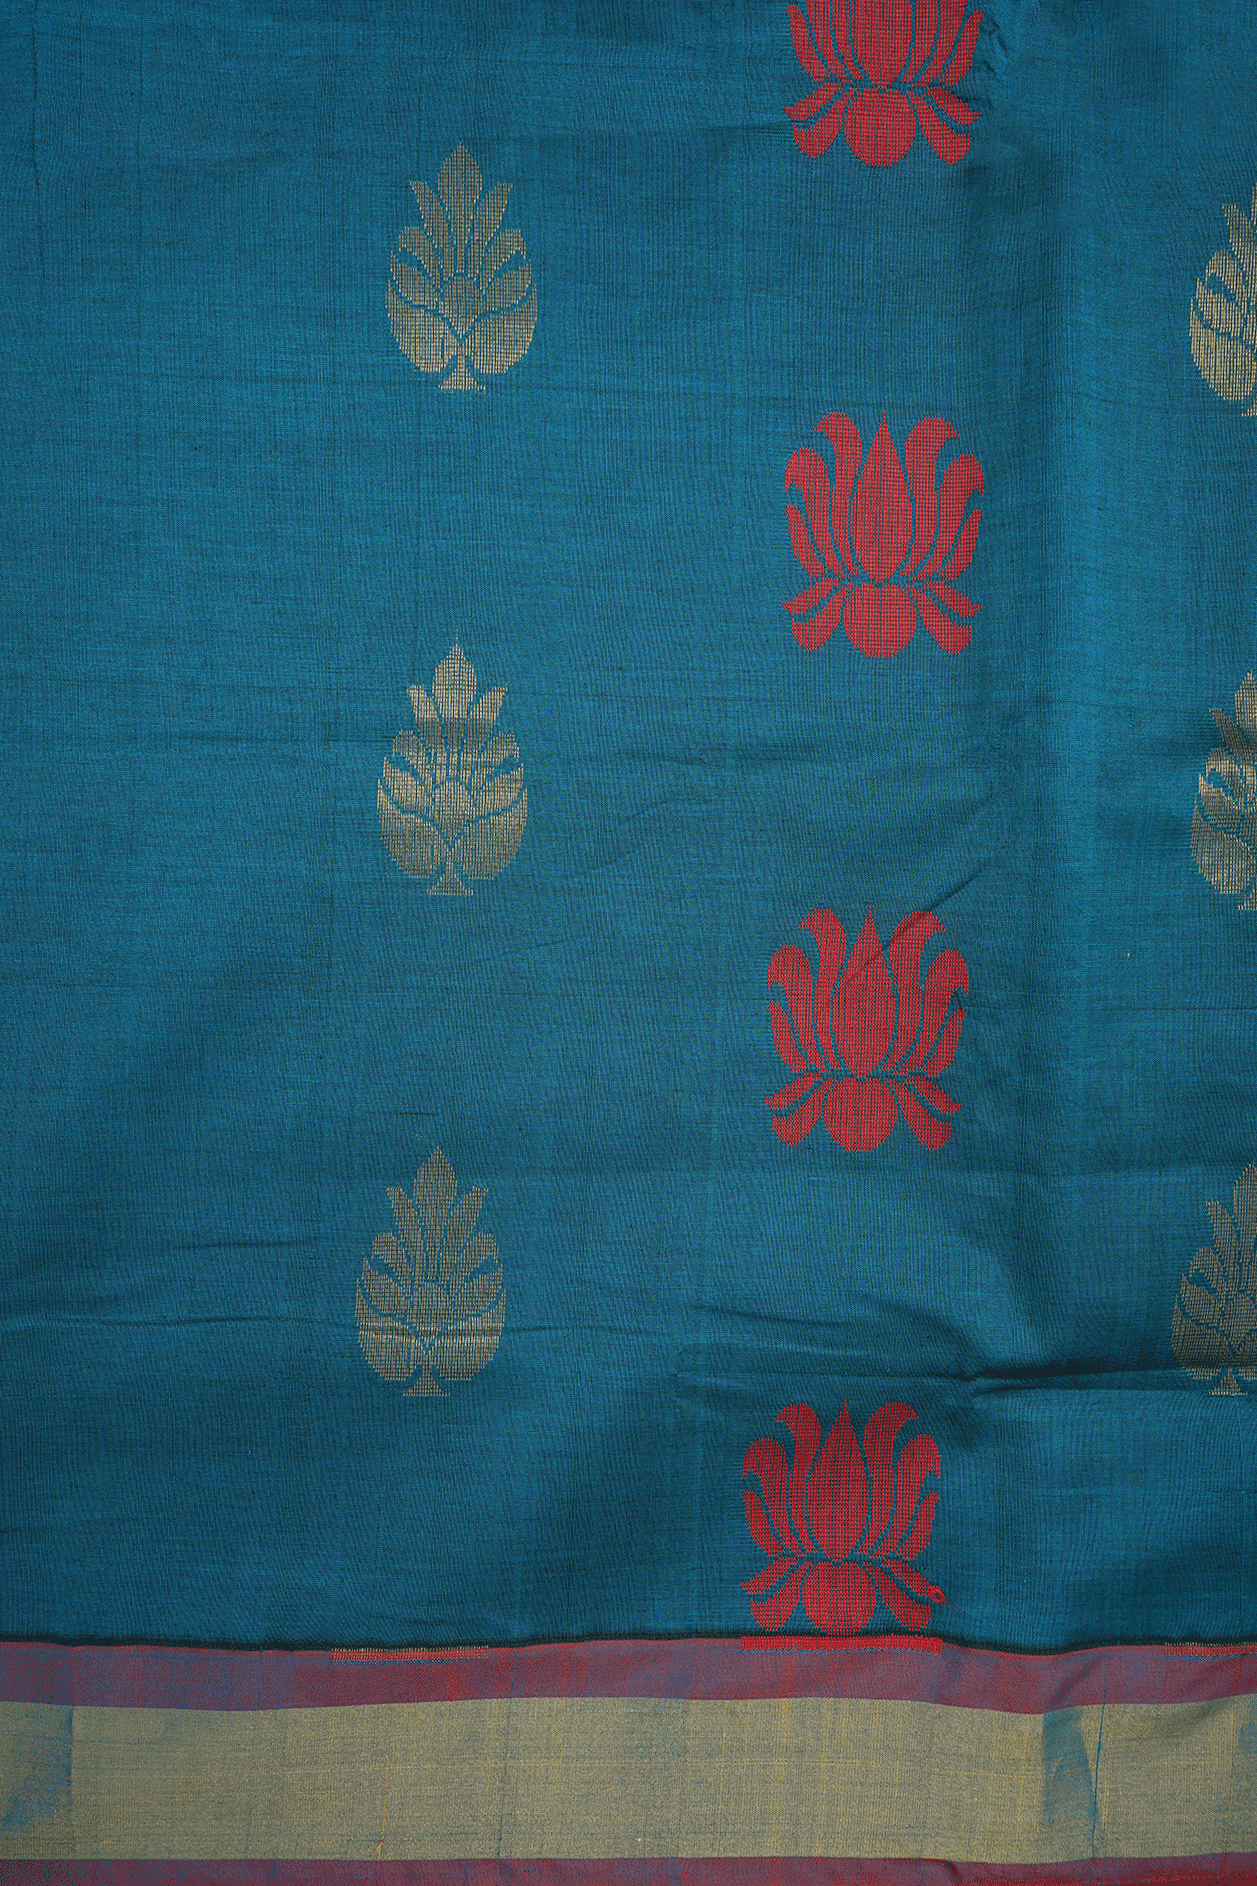 Floral Zari And Threadwork Motif Teal Blue Poly Cotton Saree